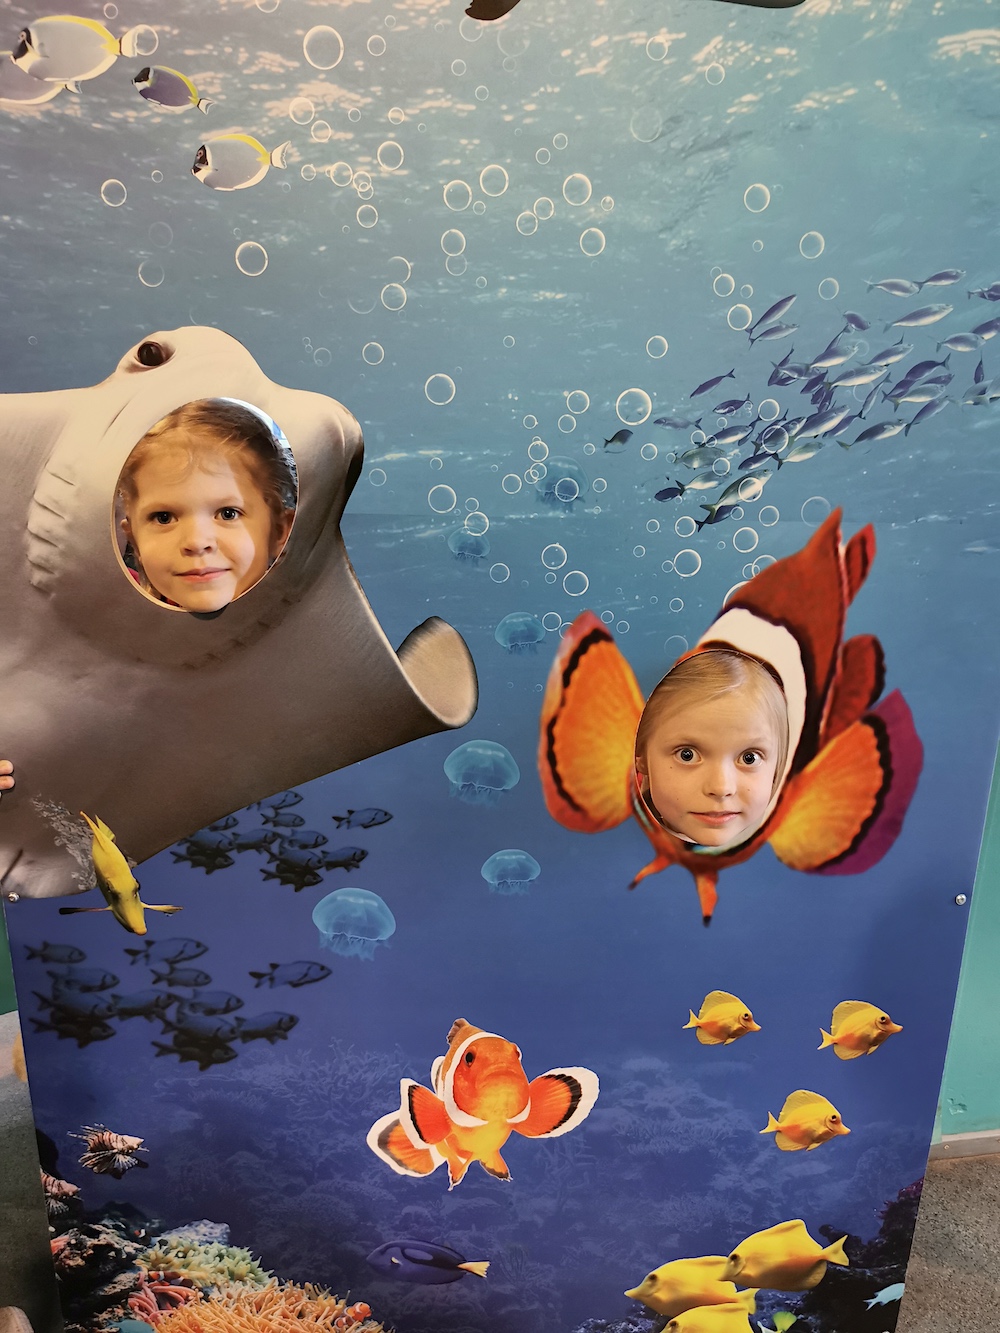 Kuvassa on iso pahvi, jossa on kuva merenelävistä veden alla. Kalojen kohdalle on kaksi reikää, joista kaksi pientä tyttöä kurkistaa ja hymyilee.